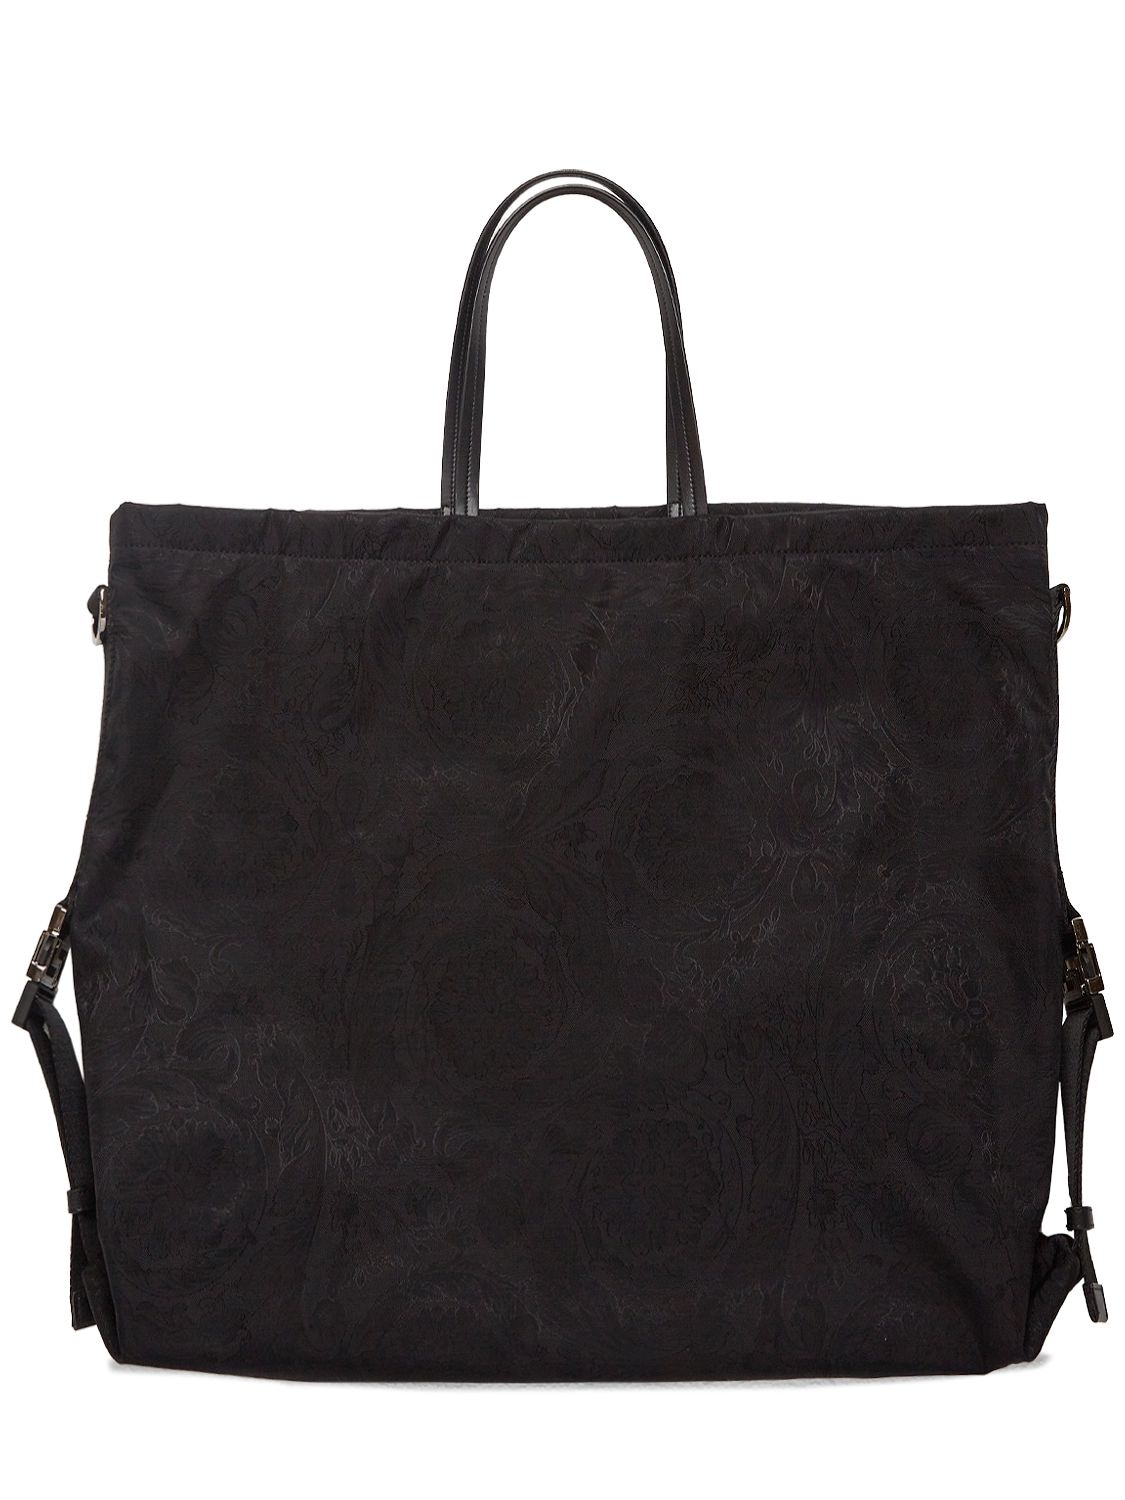 Image of Barocco Nylon Tote Bag